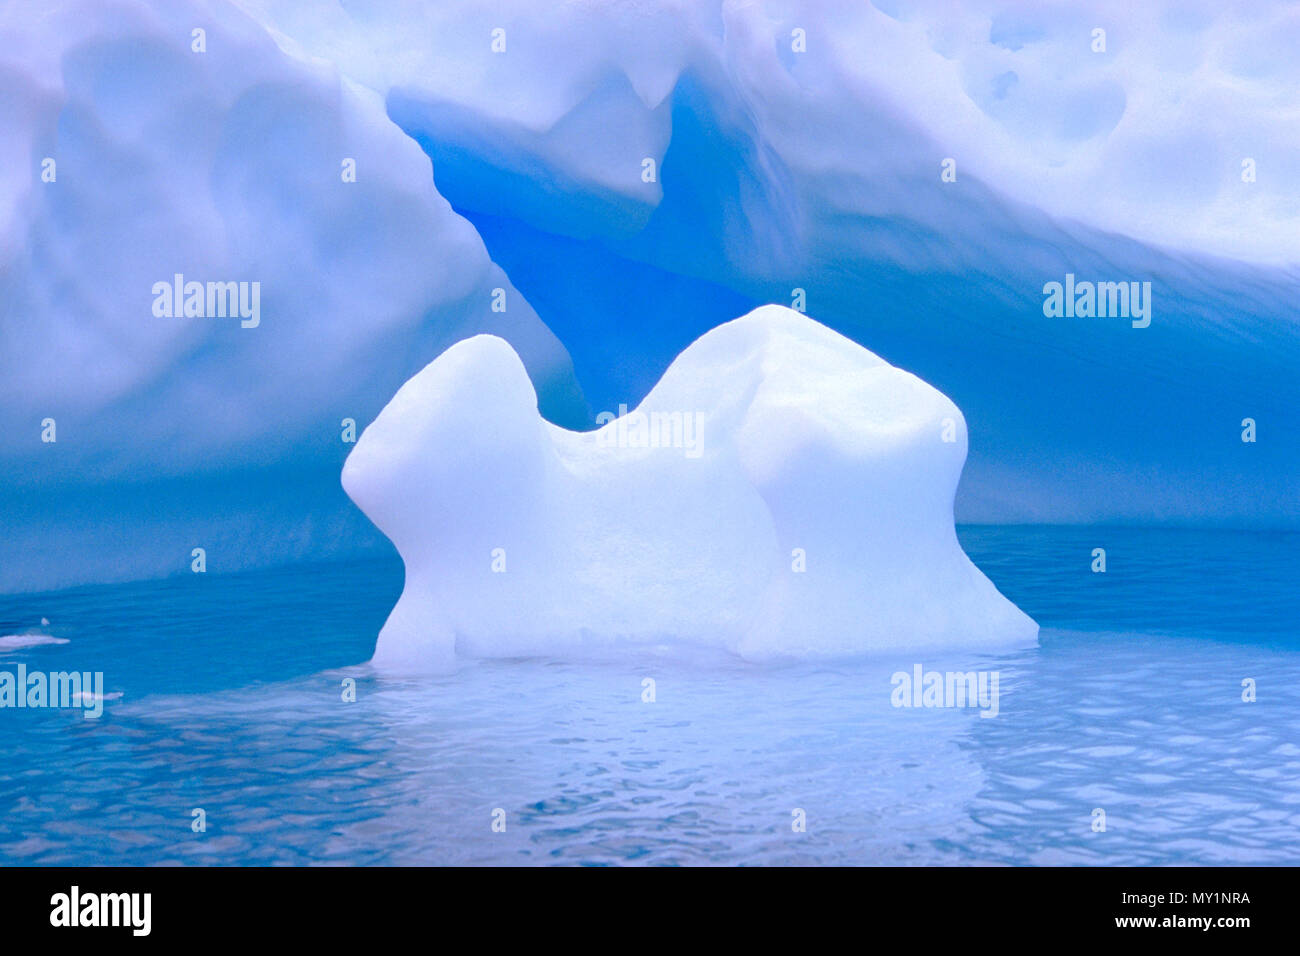 Treibende Eisberge in der Antarktis | Driften Eisberge in der Antarktis Stockfoto